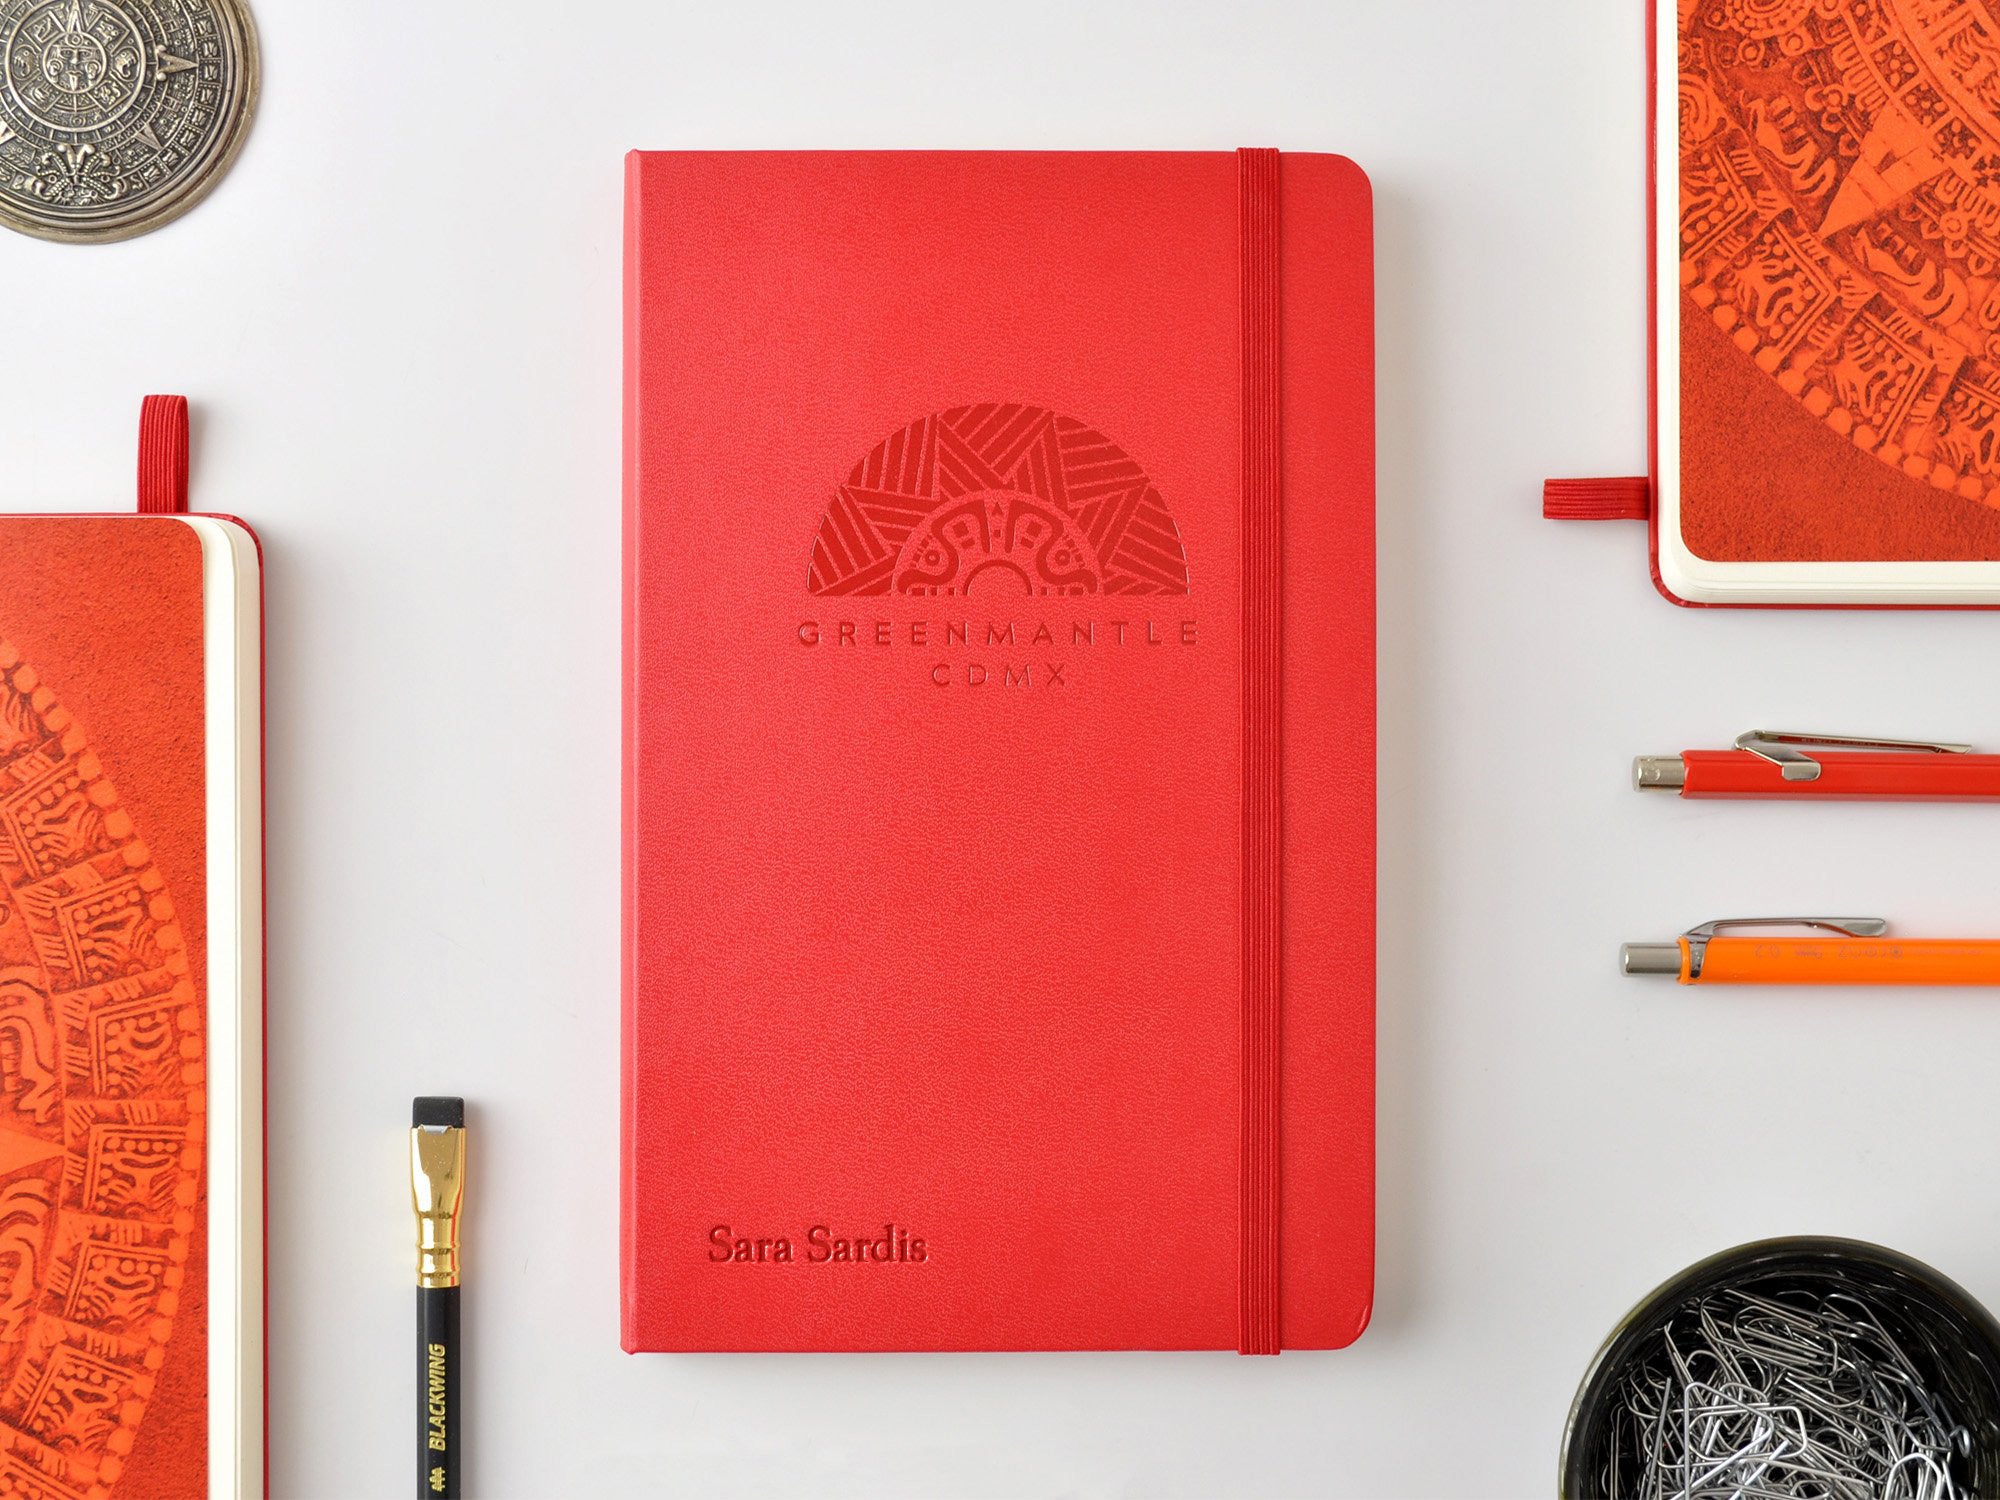 Moleskine Art Medium Sketchbook - Scarlet Red